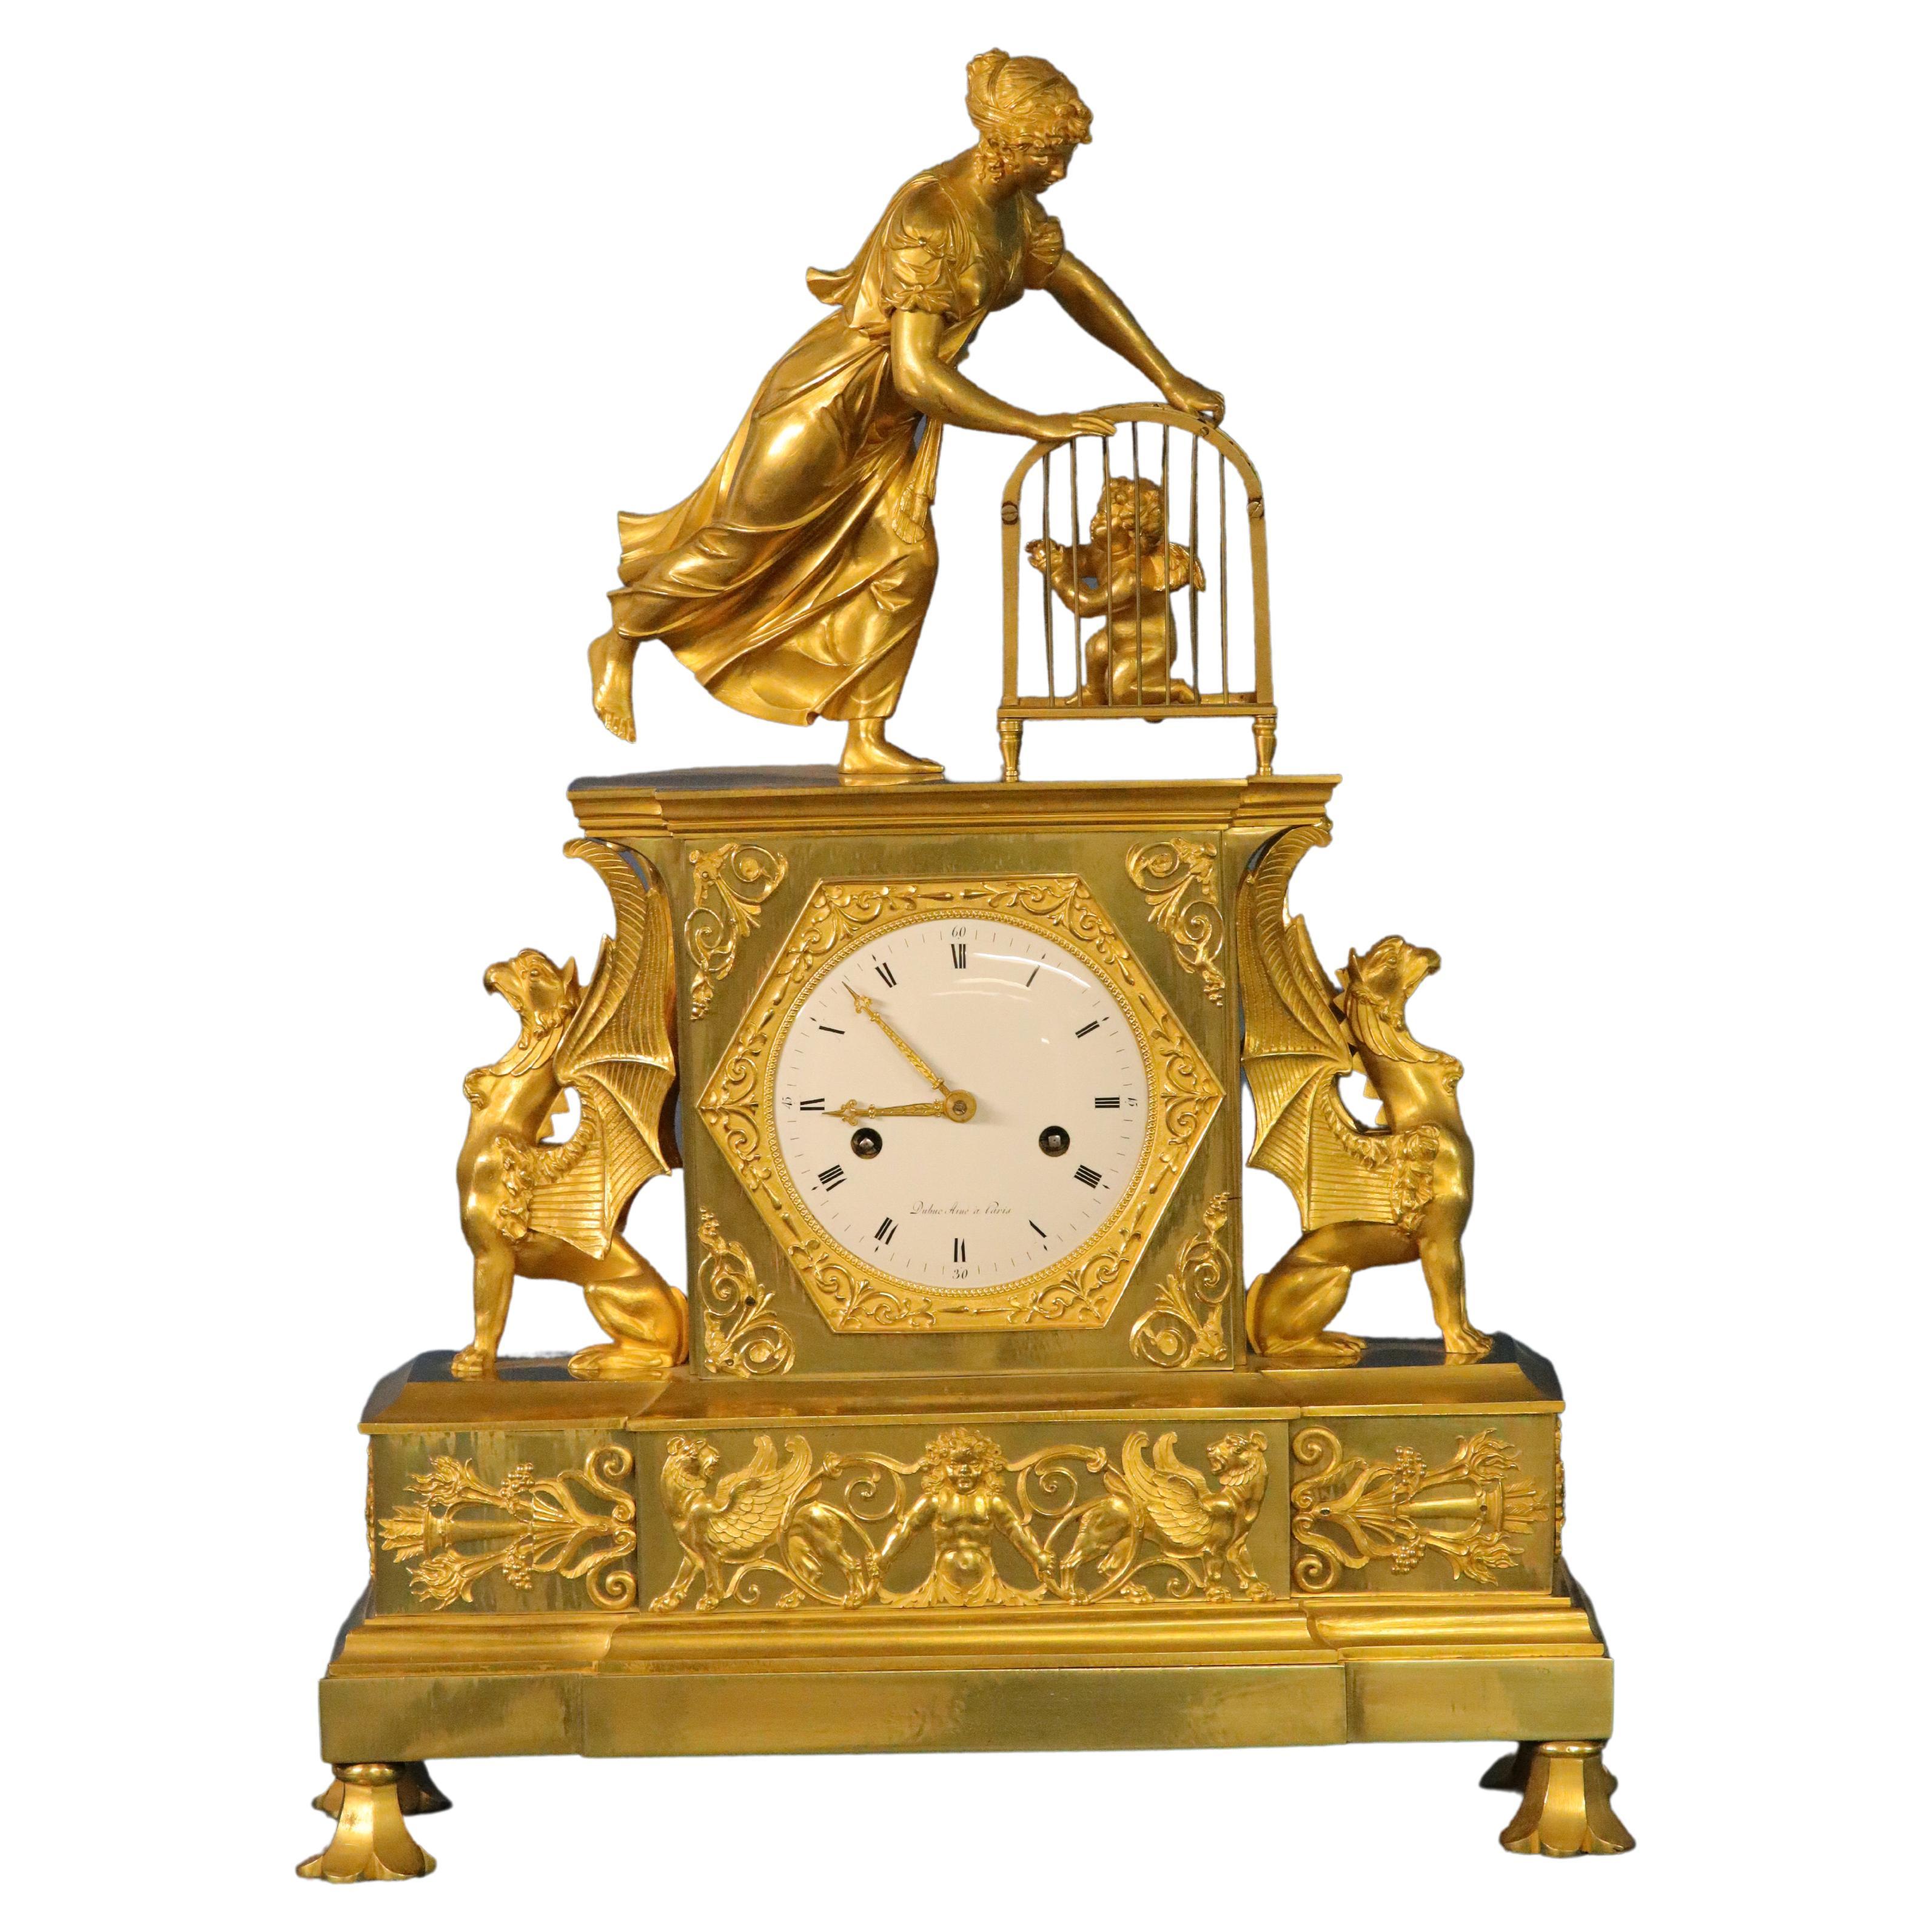 c.1810 French Ormolu Mantle Clock, ‘La Delivrance de l’Amour’